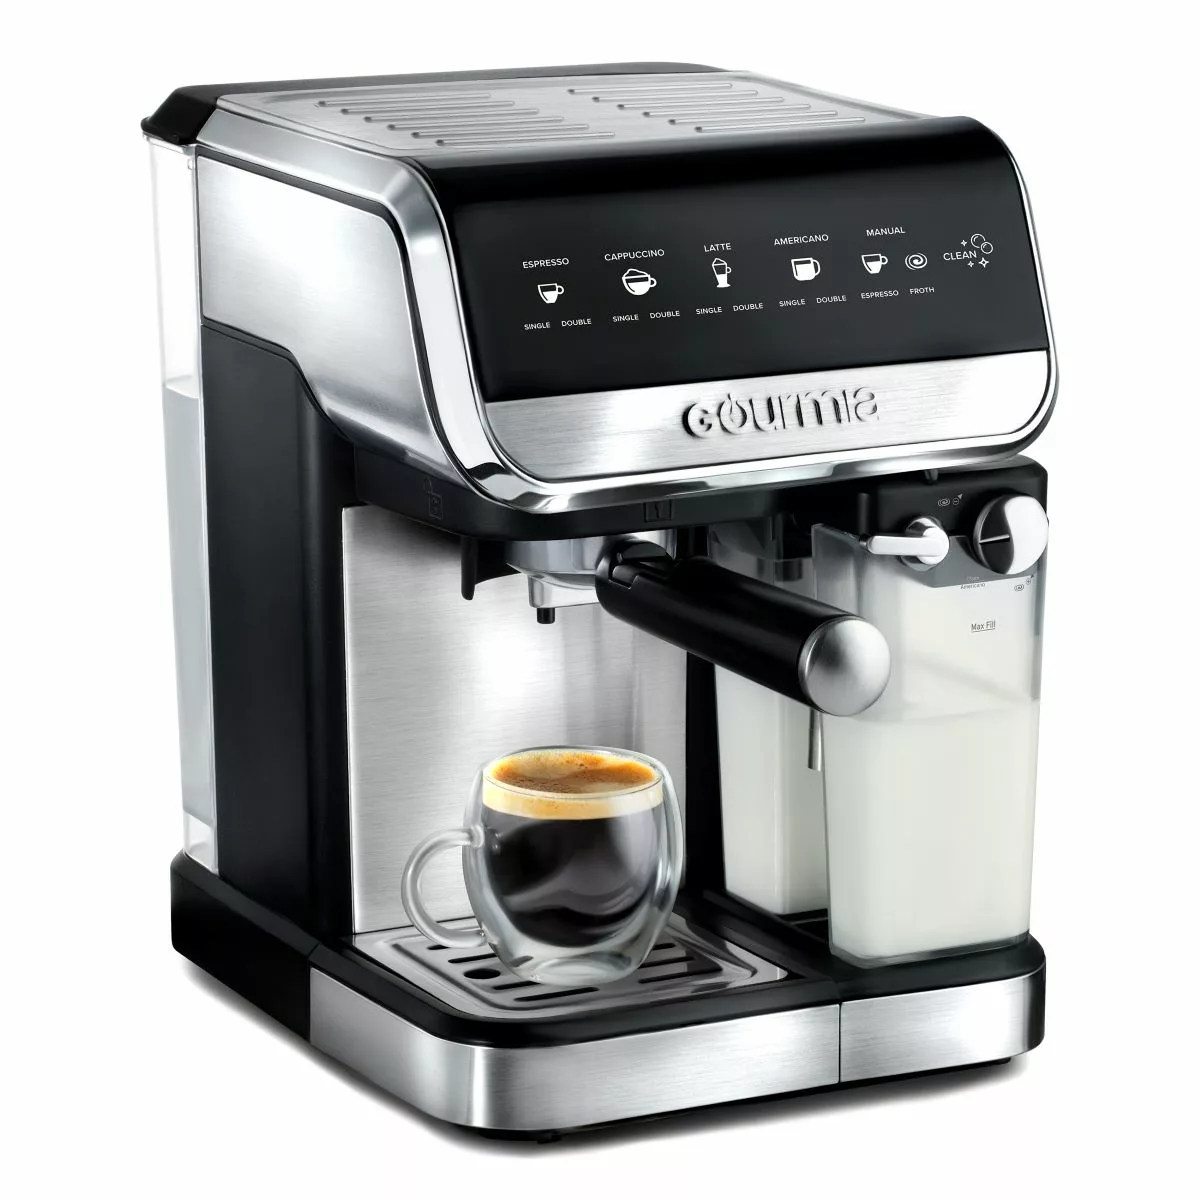 https://therebelchick.com/wp-content/uploads/2023/11/Gourmia-Espresso-Maker-5-jpg.webp